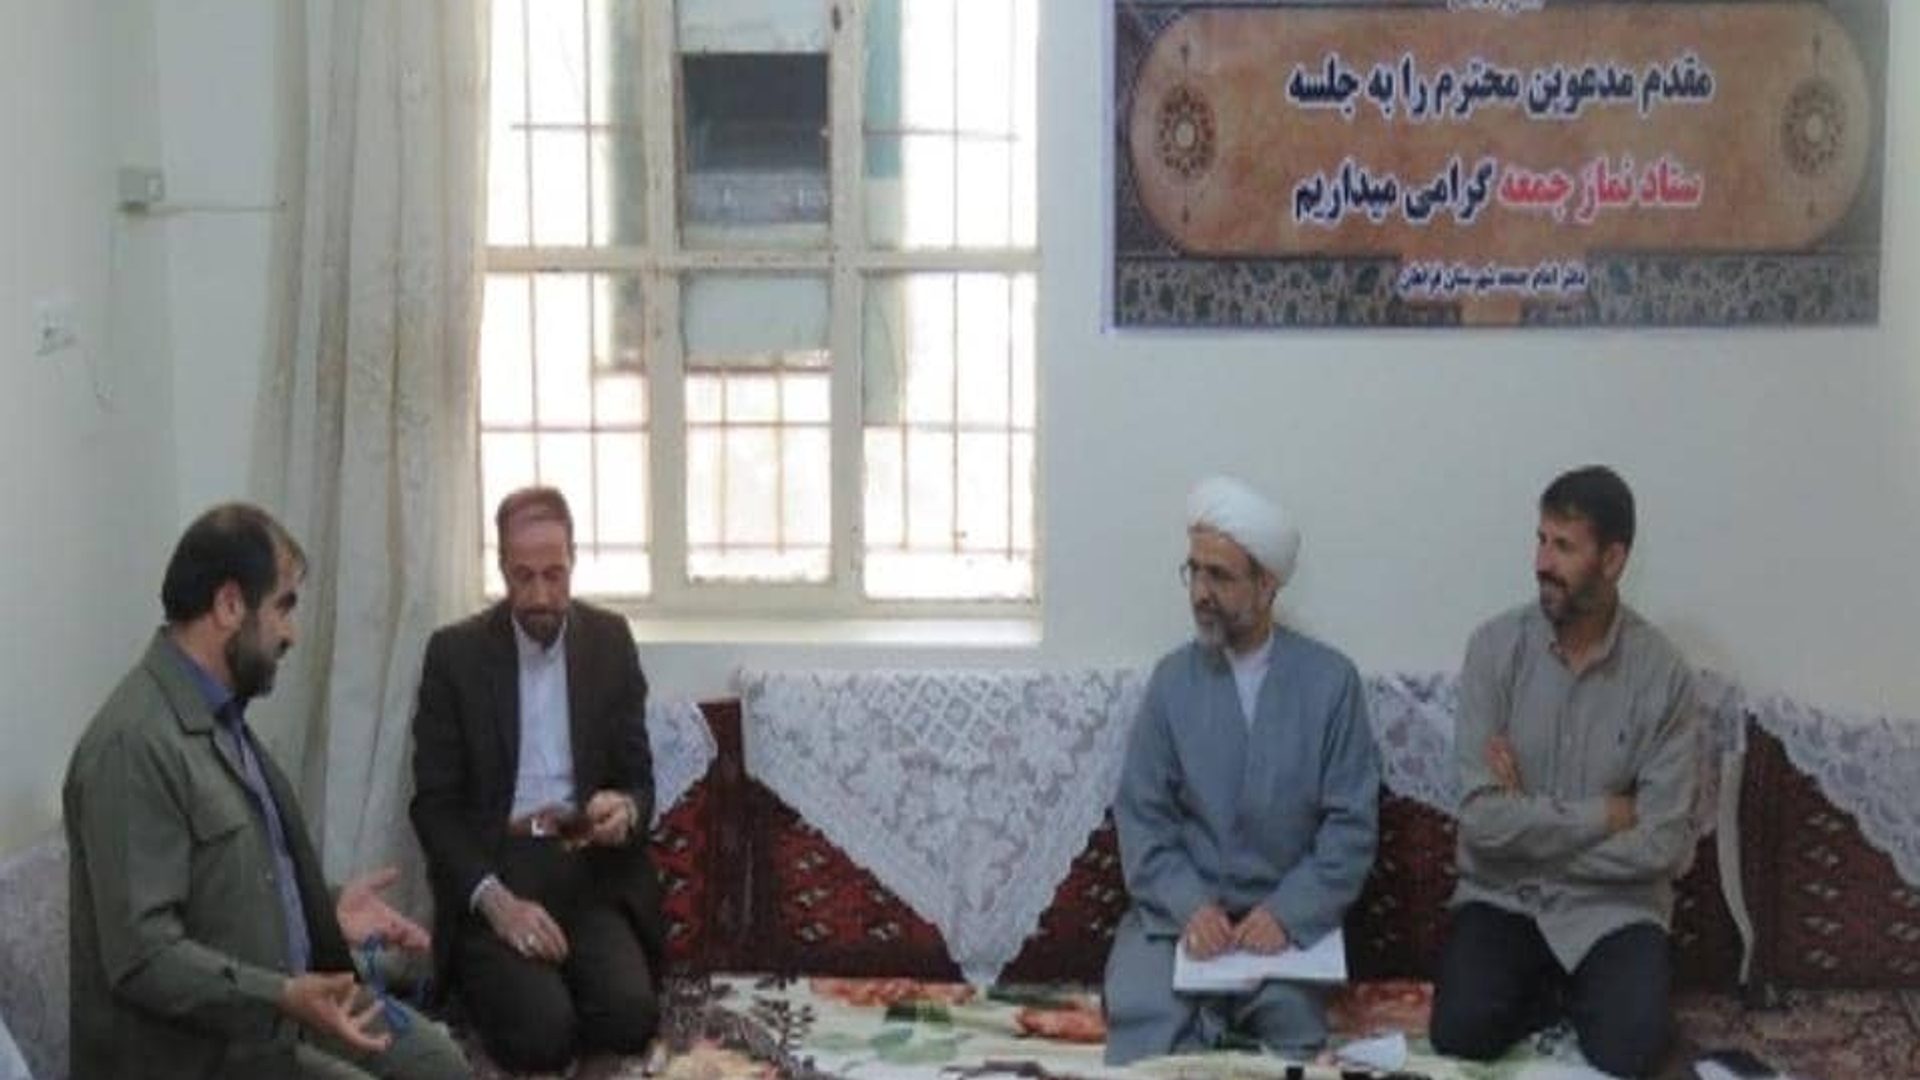 سومین جلسه شورای فرهنگ عمومی شهرستان فراهان برگزار گردید